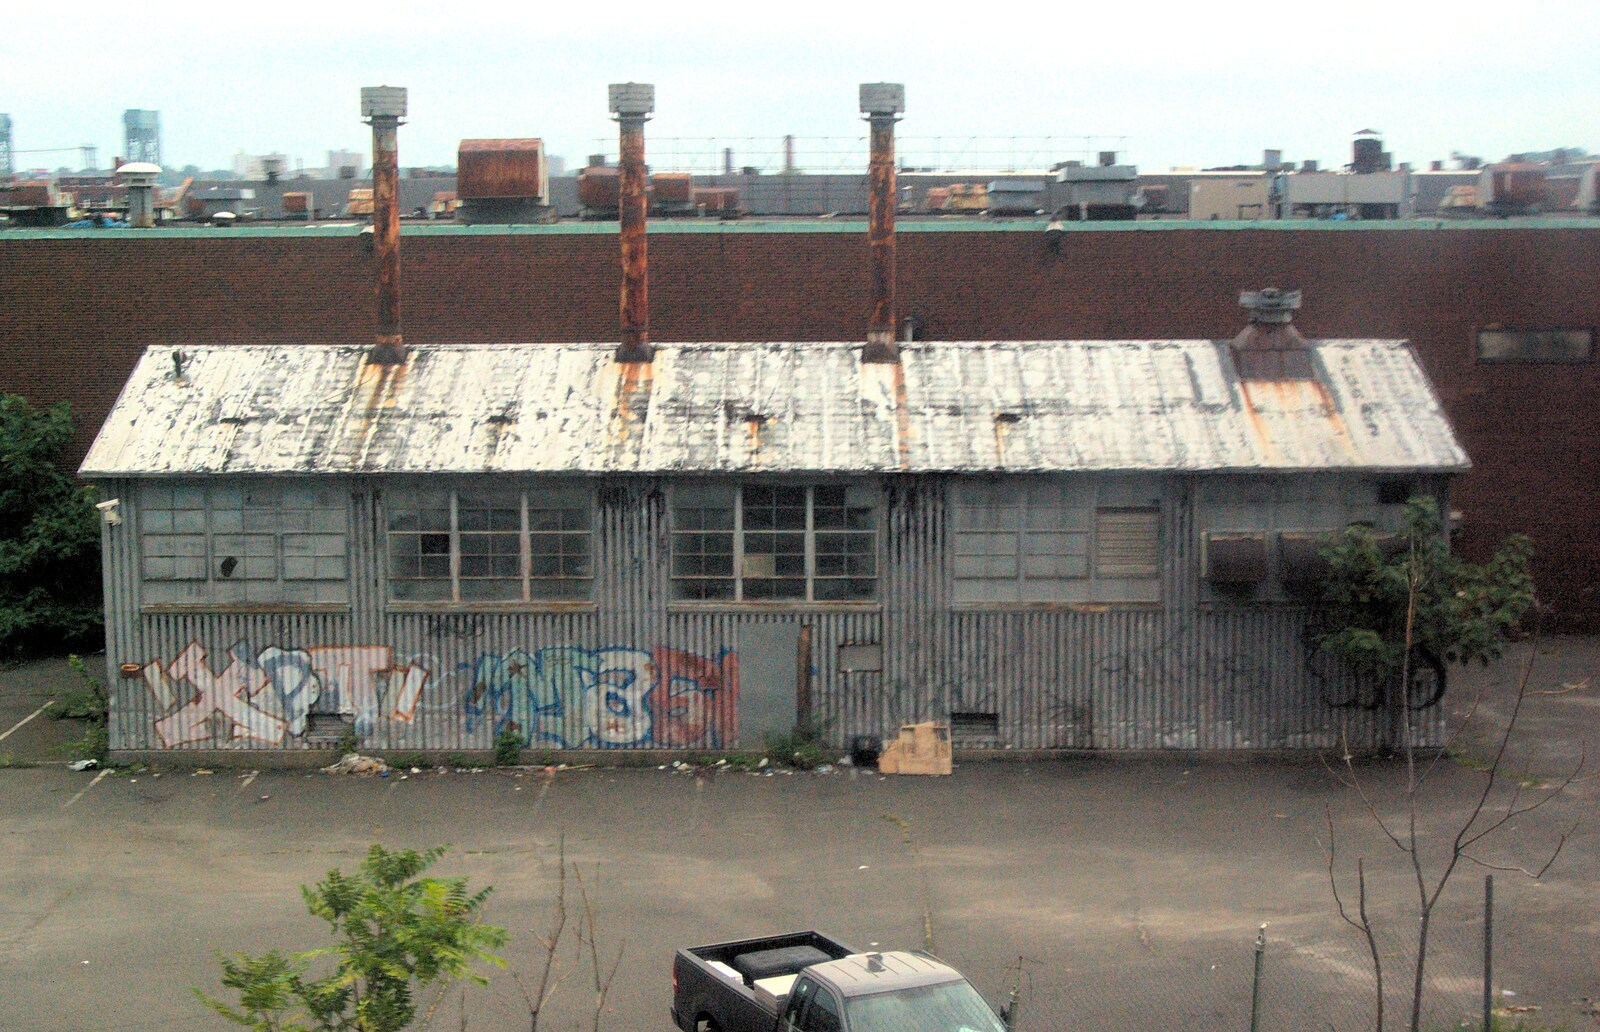 A derelict tin building from A Manhattan Hotdog, New York, USA - 21st August 2011